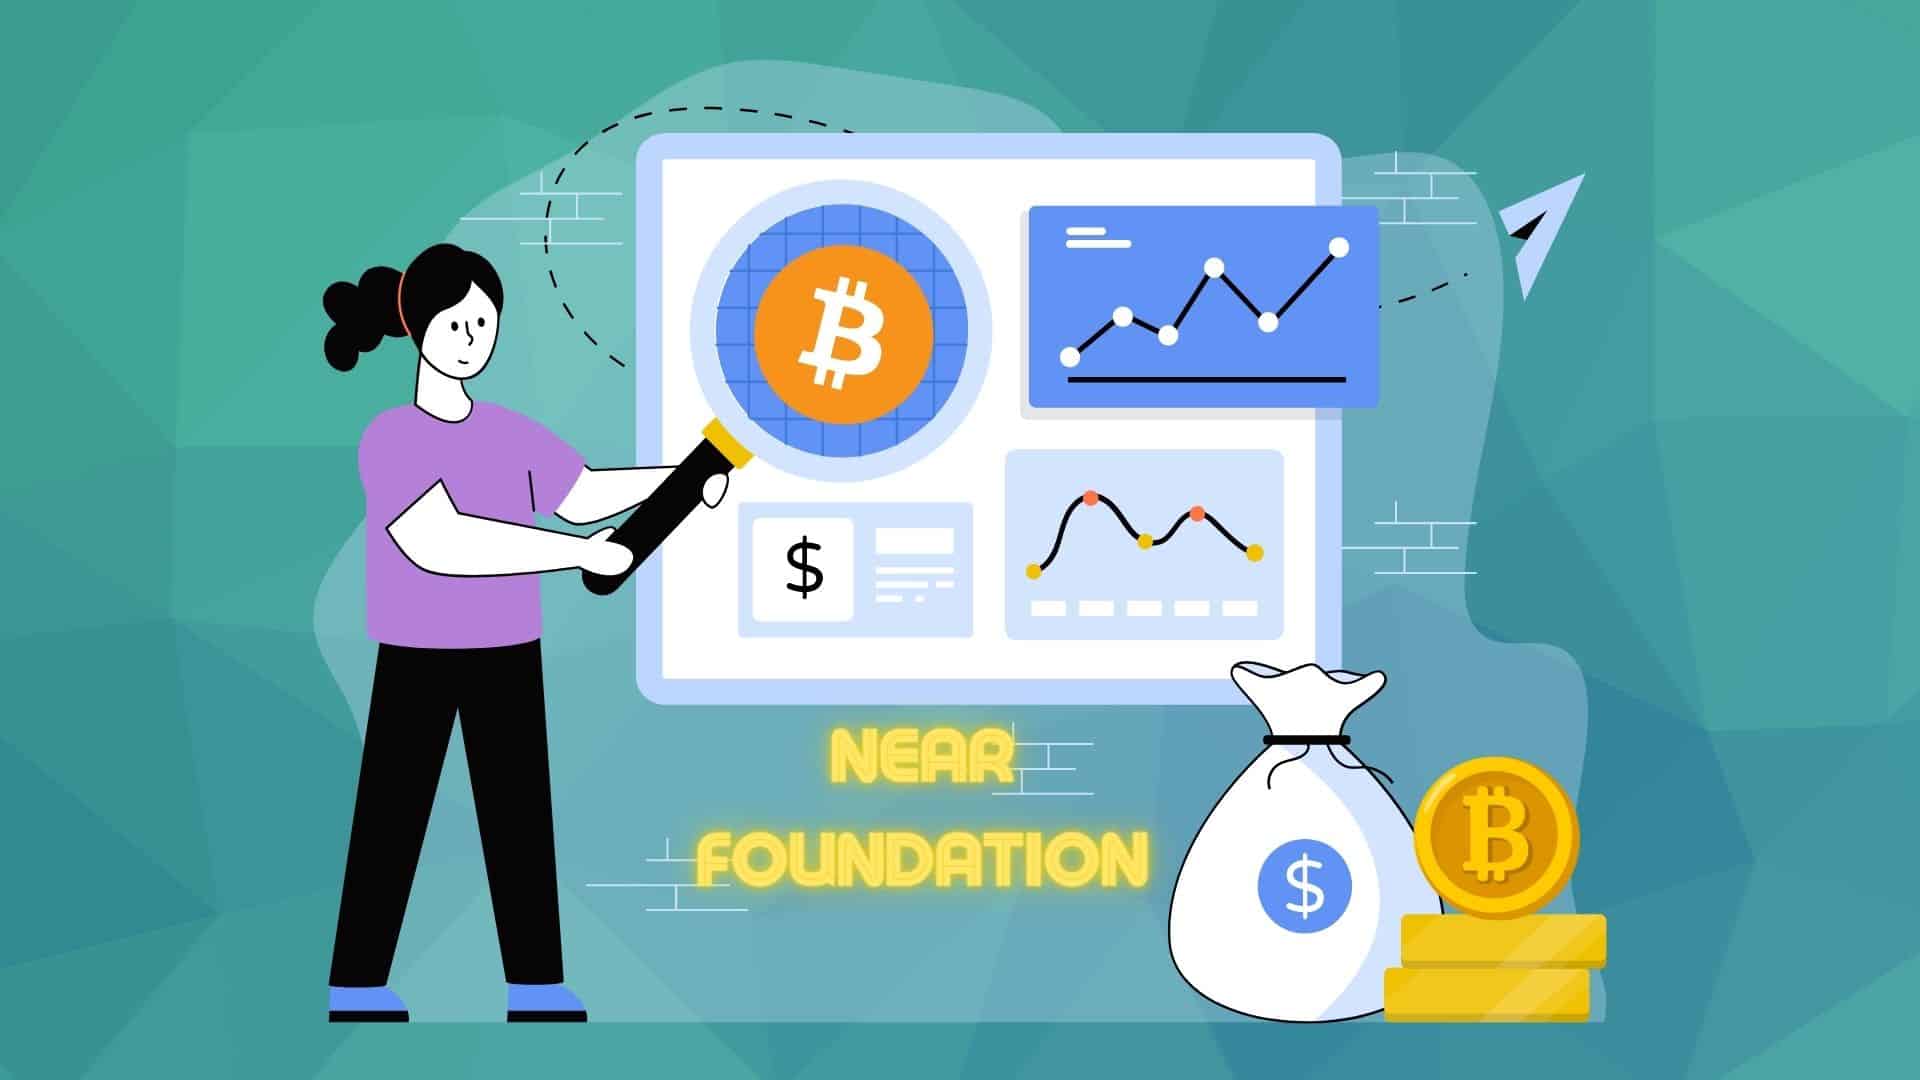 Эффективное регулирование привлечет в криптоиндустрию крупных игроков - Глава NEAR Foundation